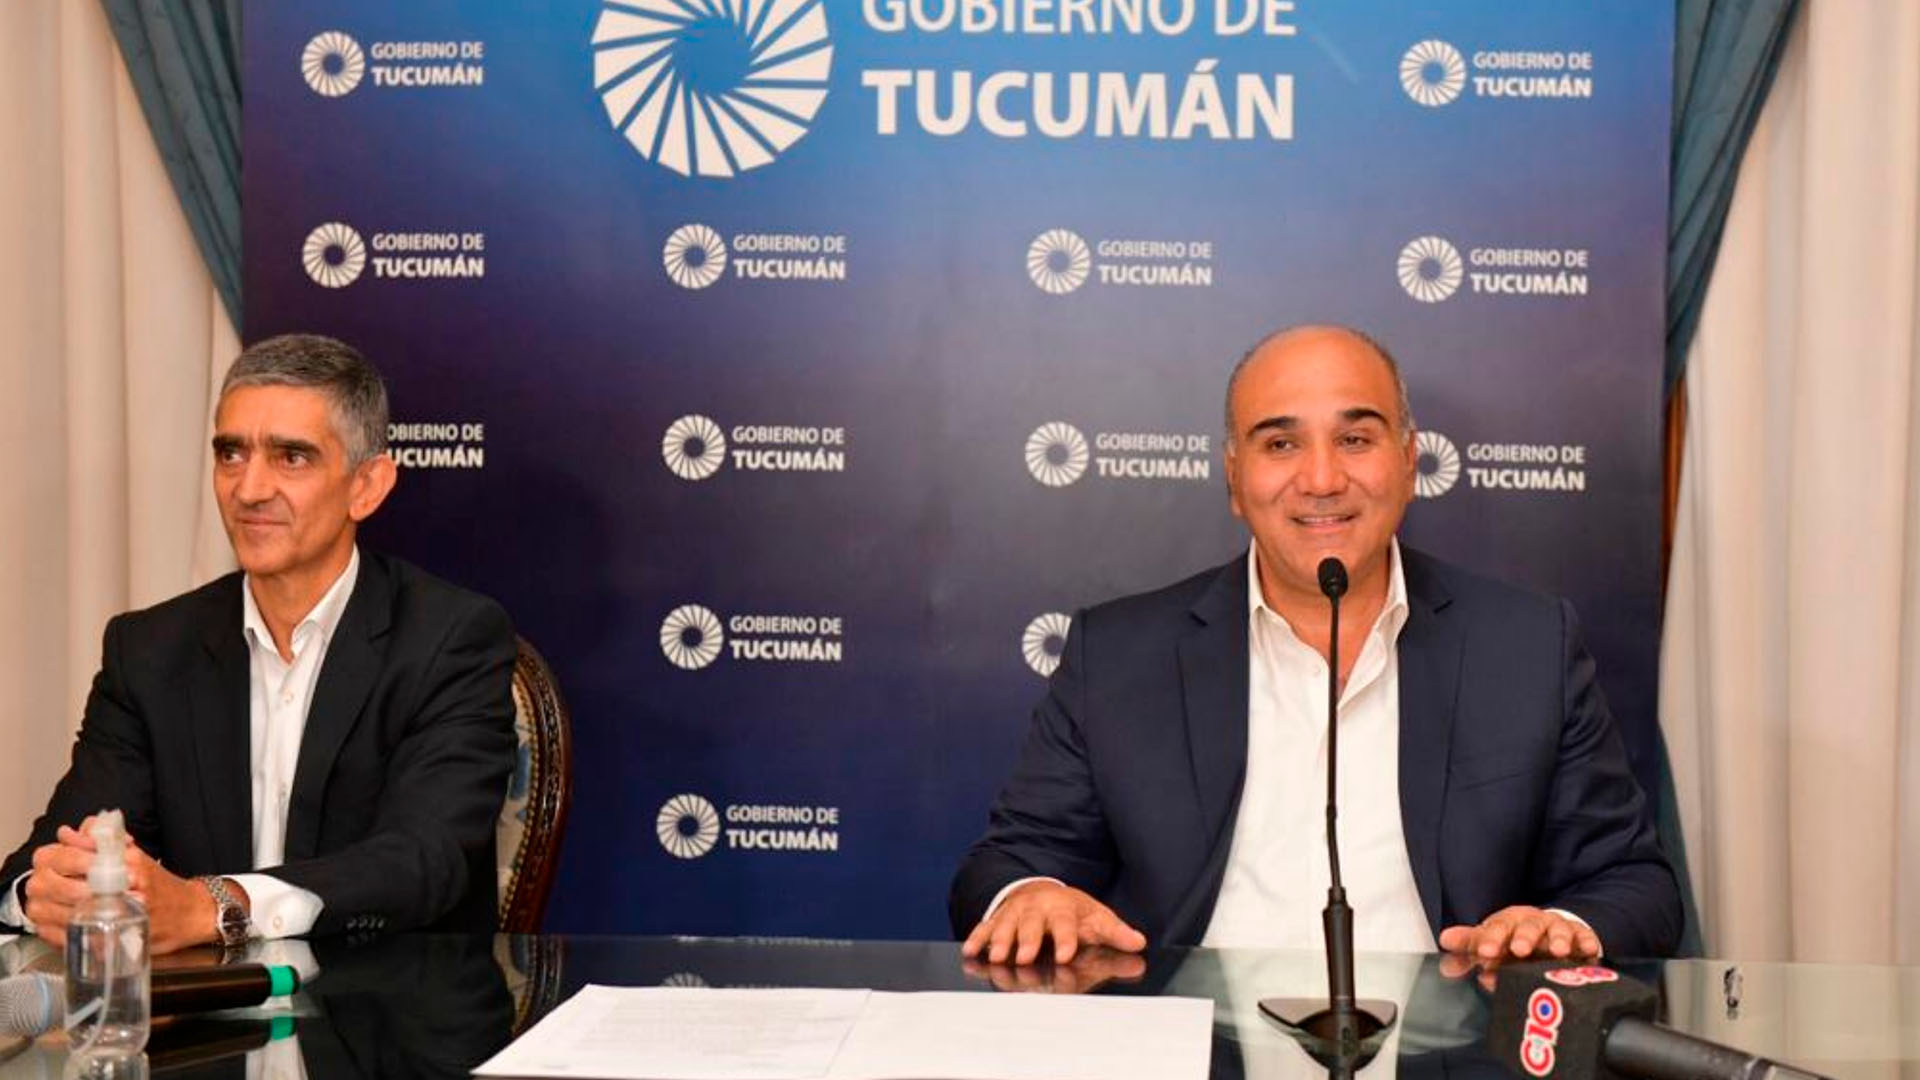 Las elecciones en la provincia de Tucumán se realizarán el 11 de junio